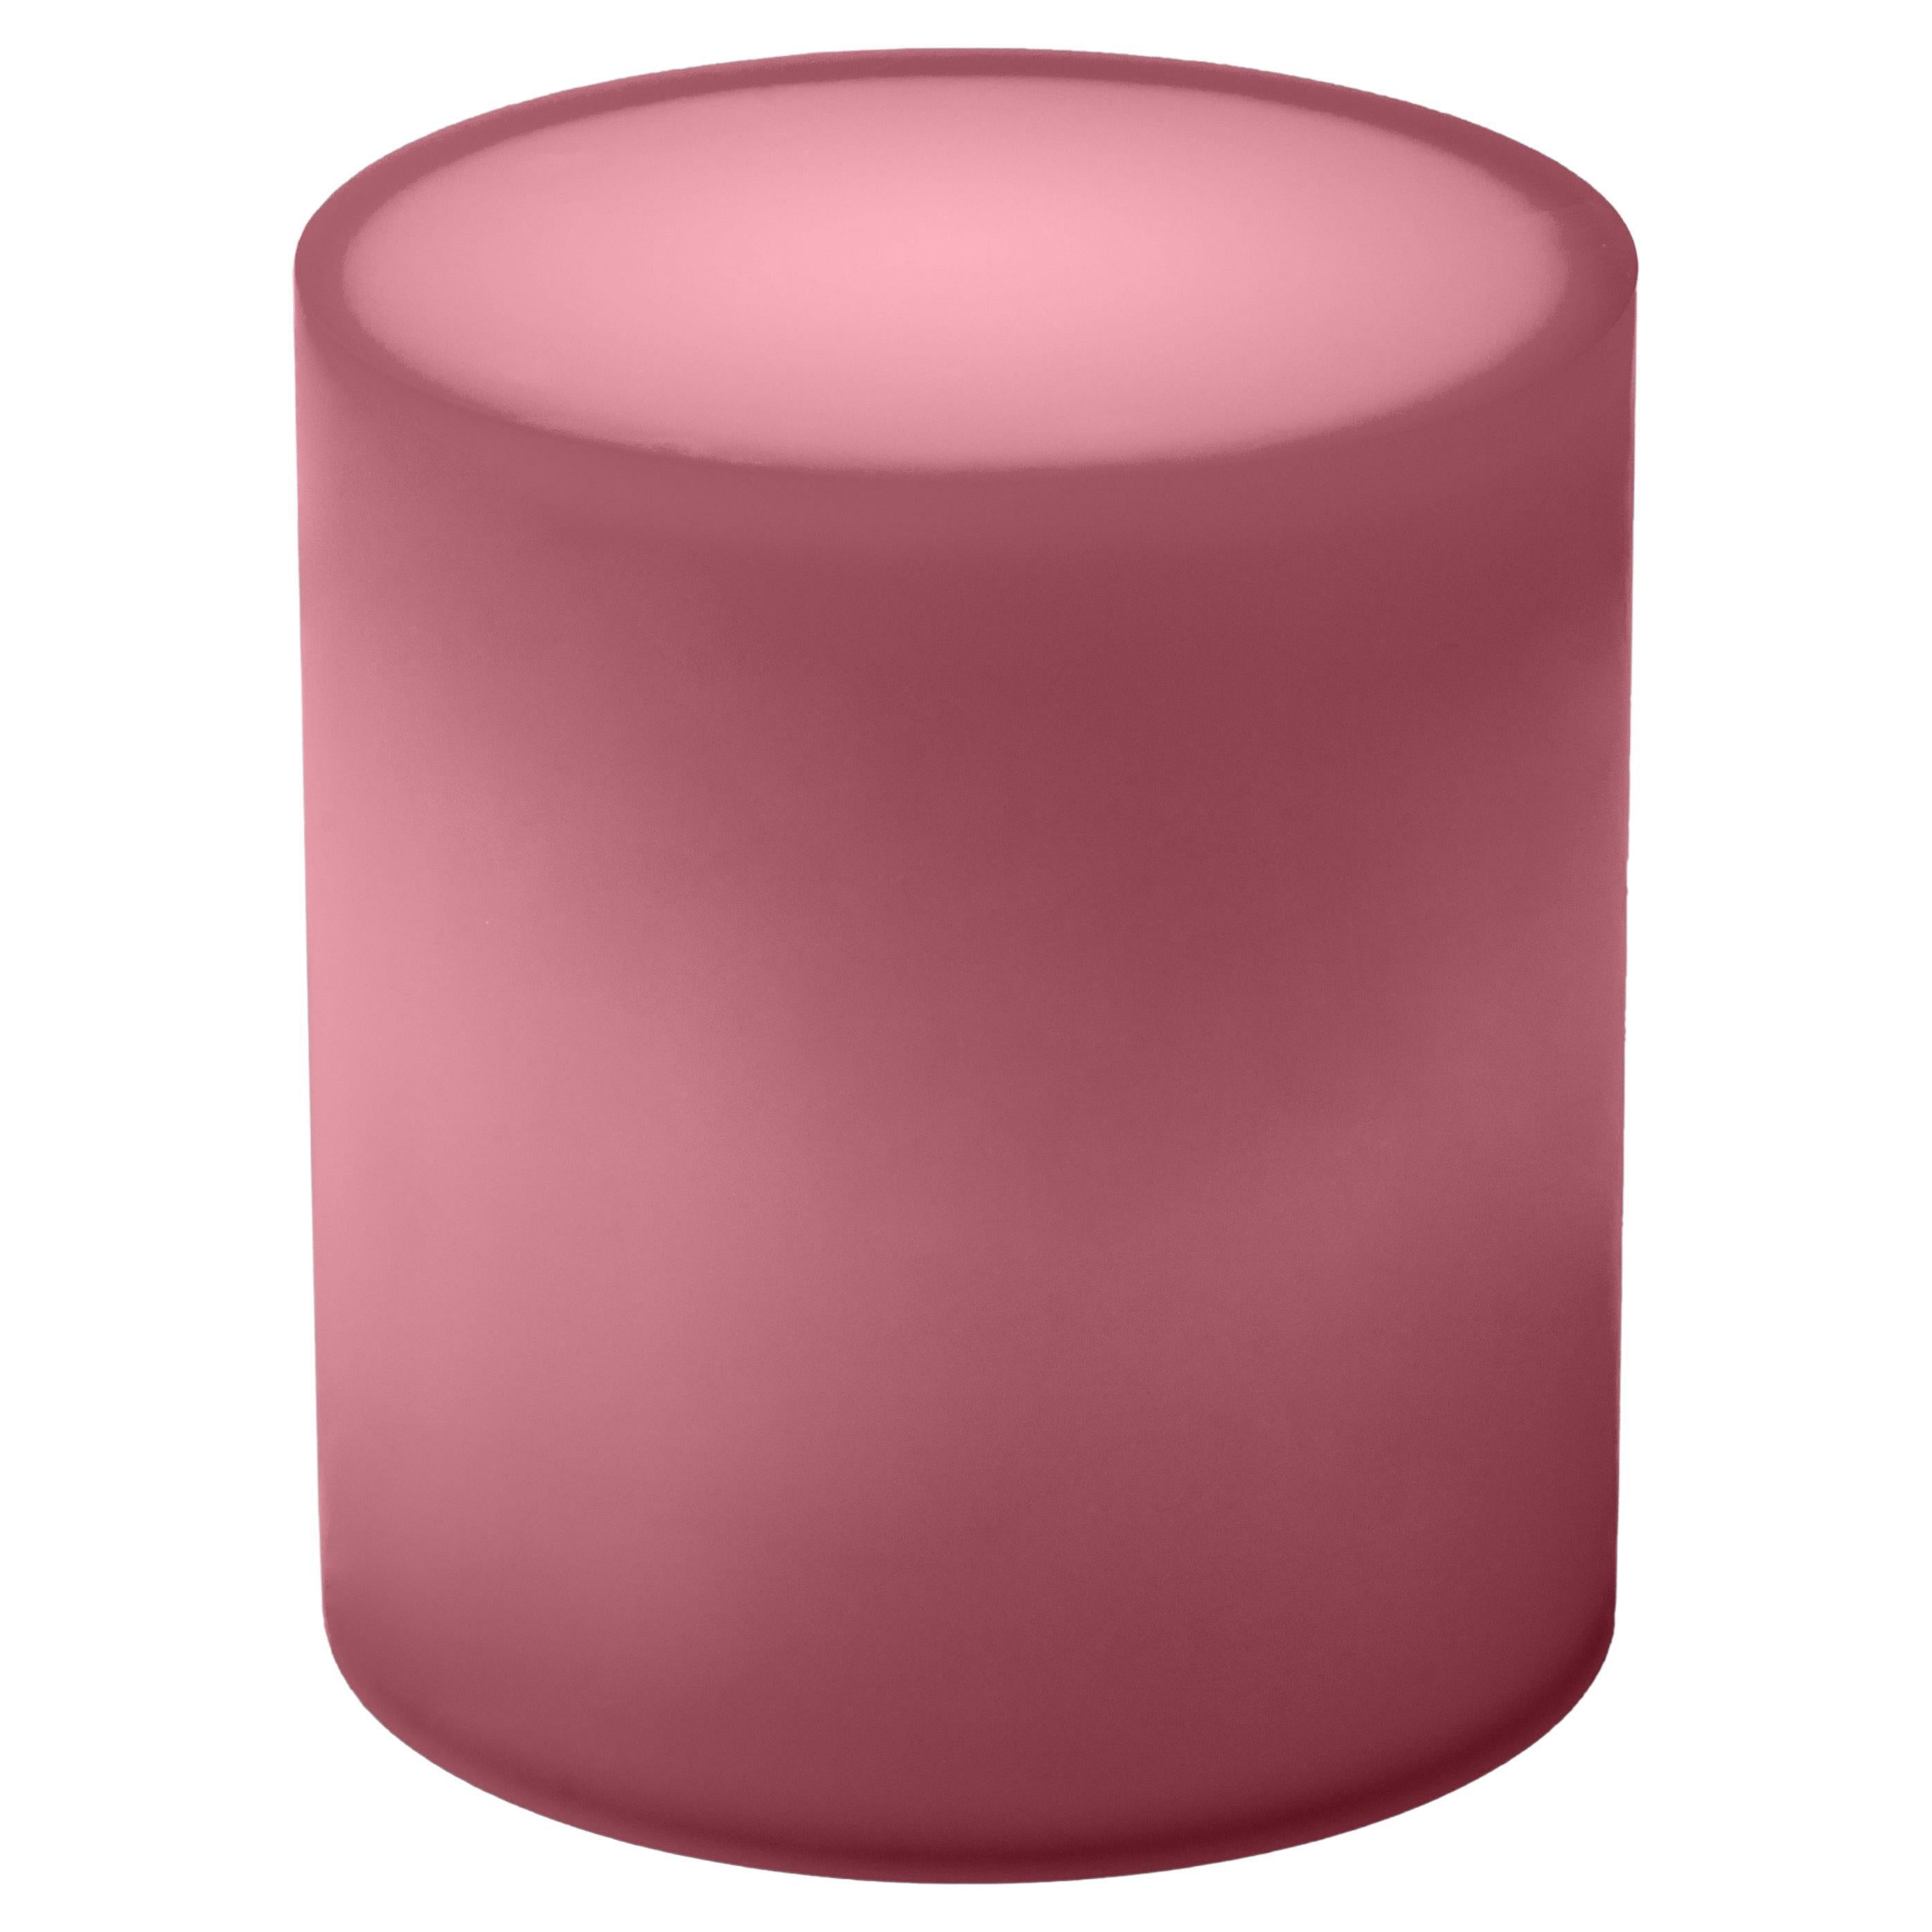 Table d'appoint/tabouret en résine tambour rose poussiéreux par Facture, REP par Tuleste Factory